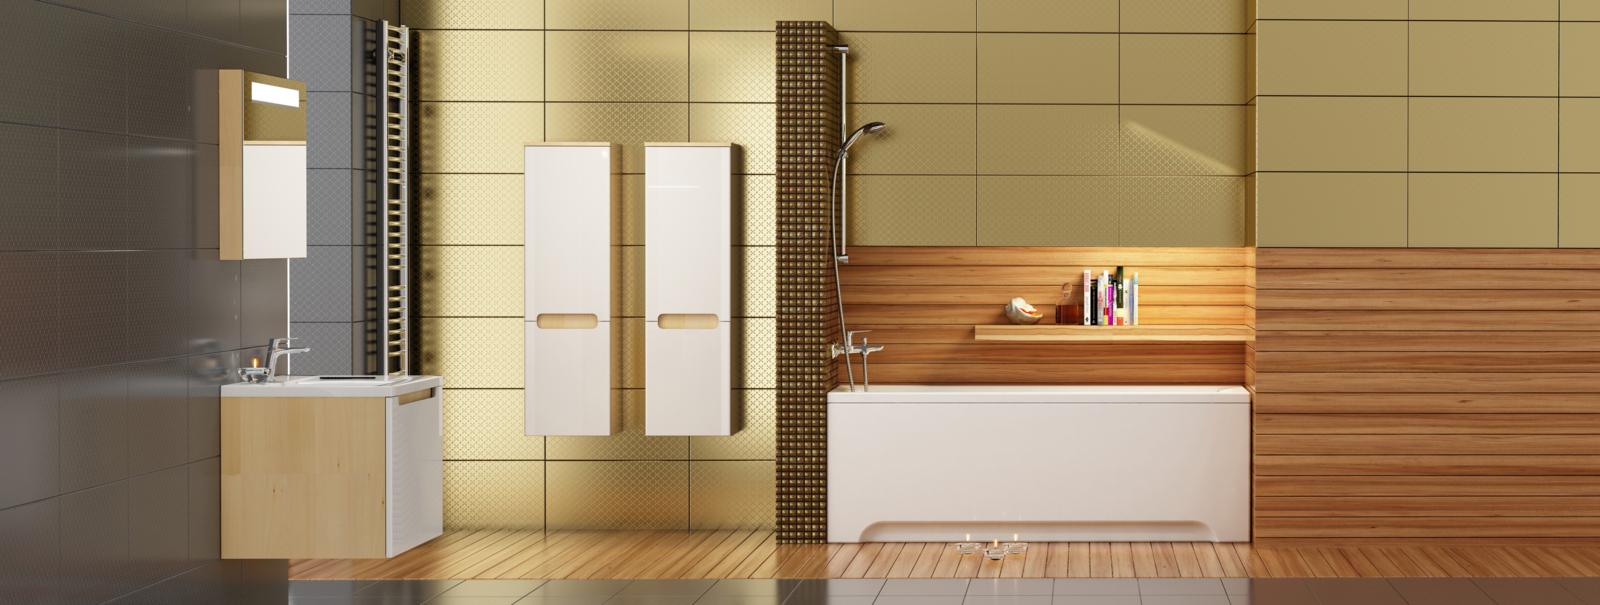 Meleg árnyalatú burkolattal és felfestéssel harmonikus egységet alkotnak a klasszikus vonalvezetésű szaniterek: a fürdőszobabútorok mellett a kád és a zuhanyzó is.